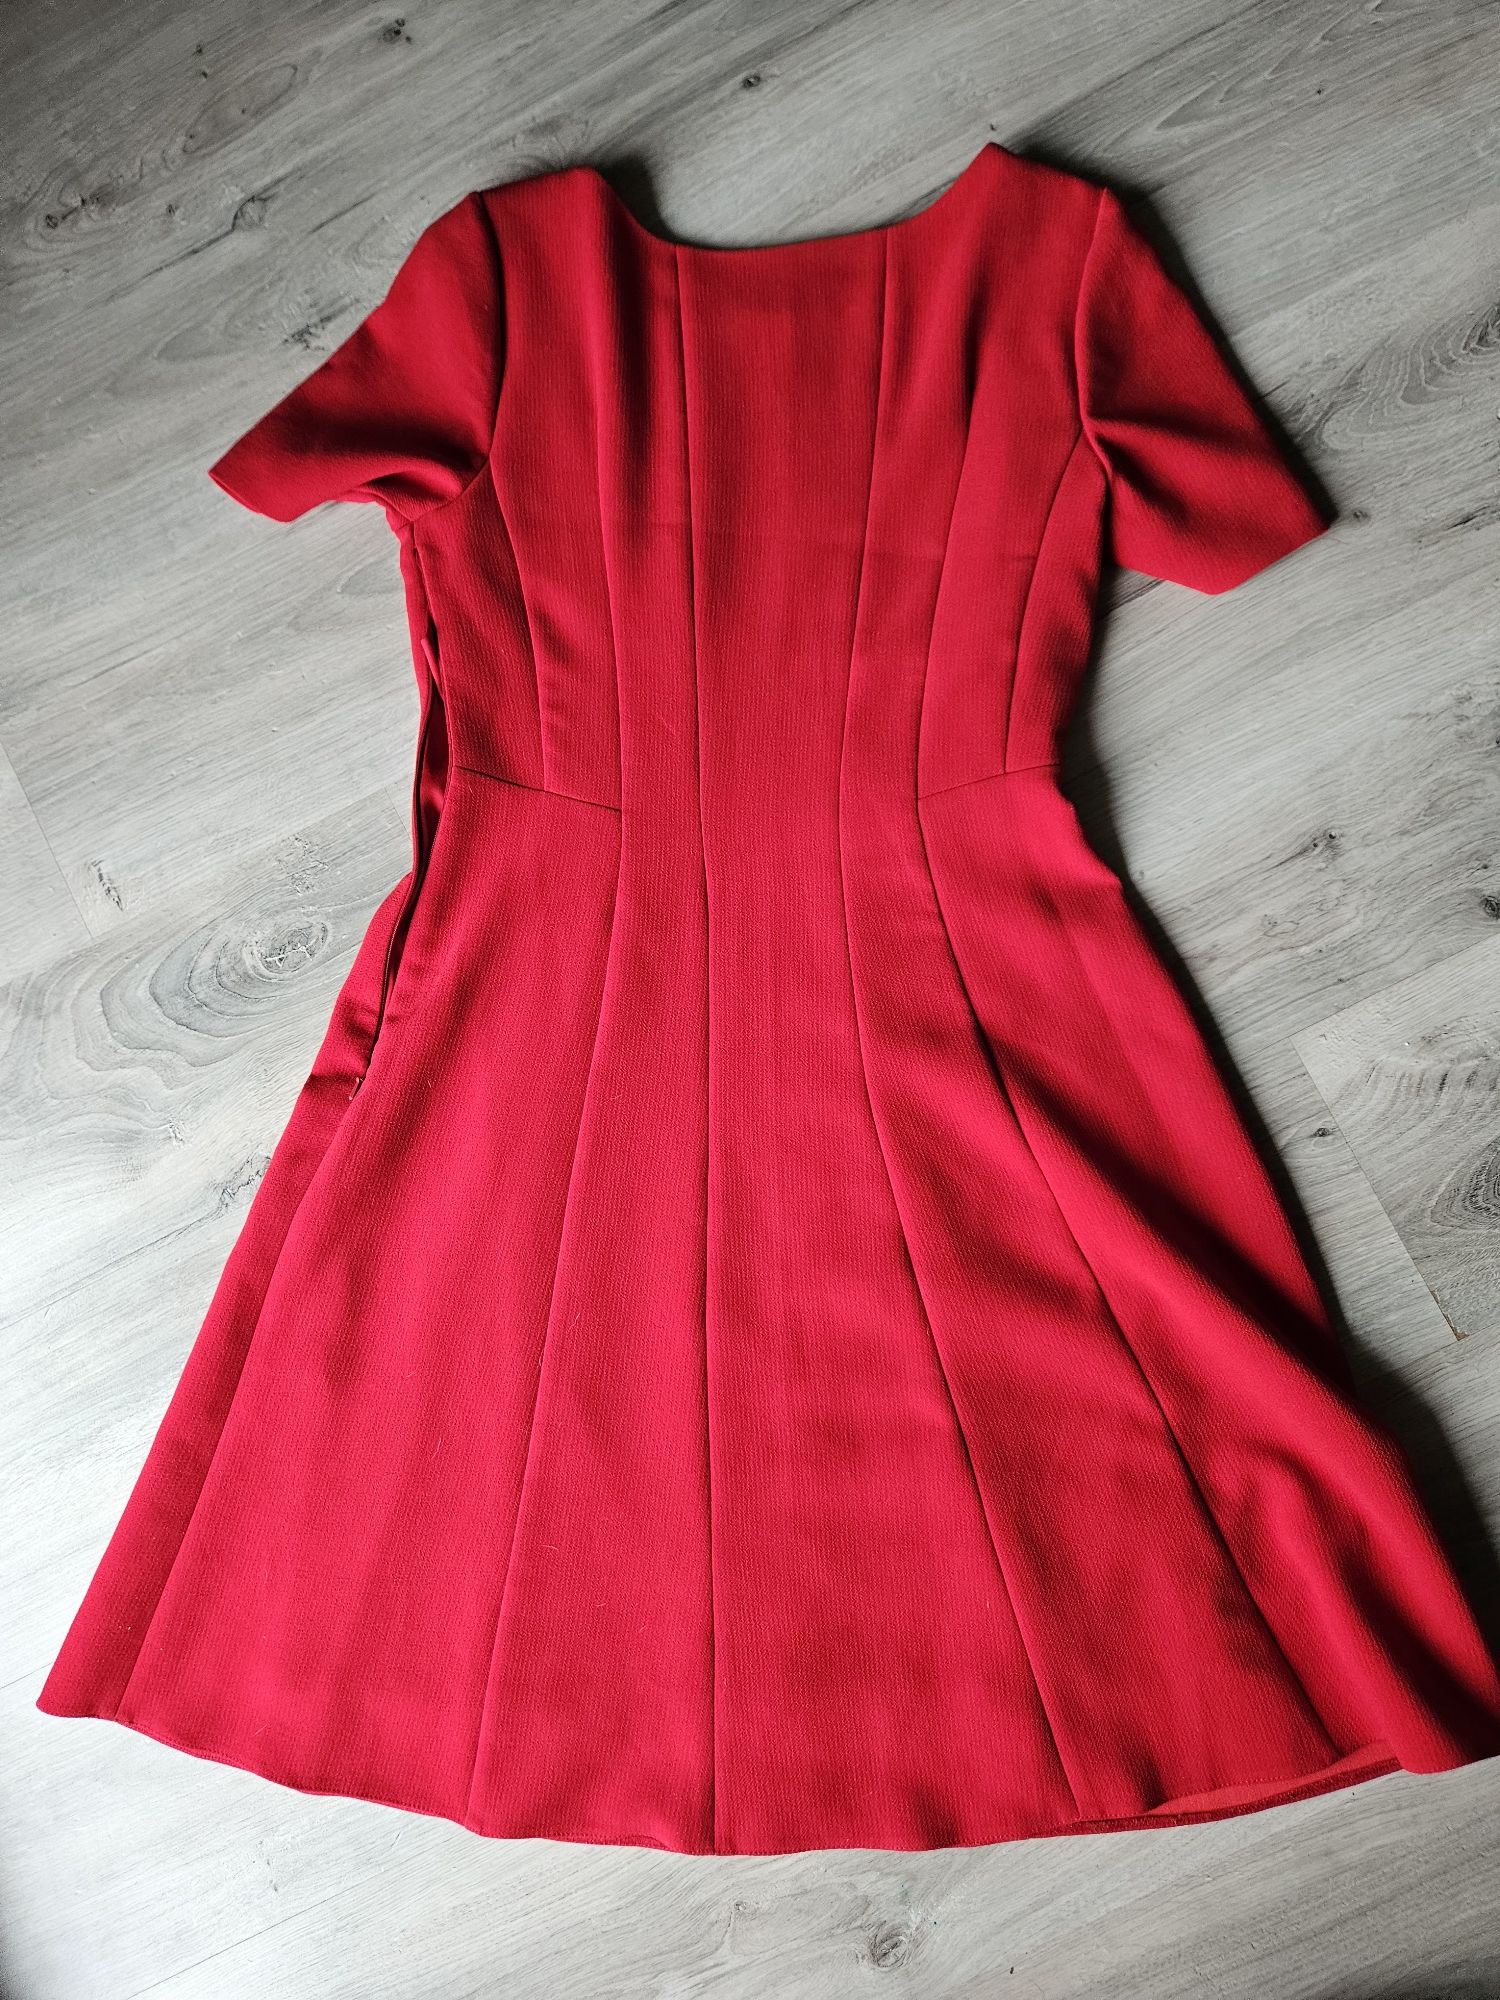 Czerwona sukienka Phase eight.  Rozmiar 12. Stan  idealny